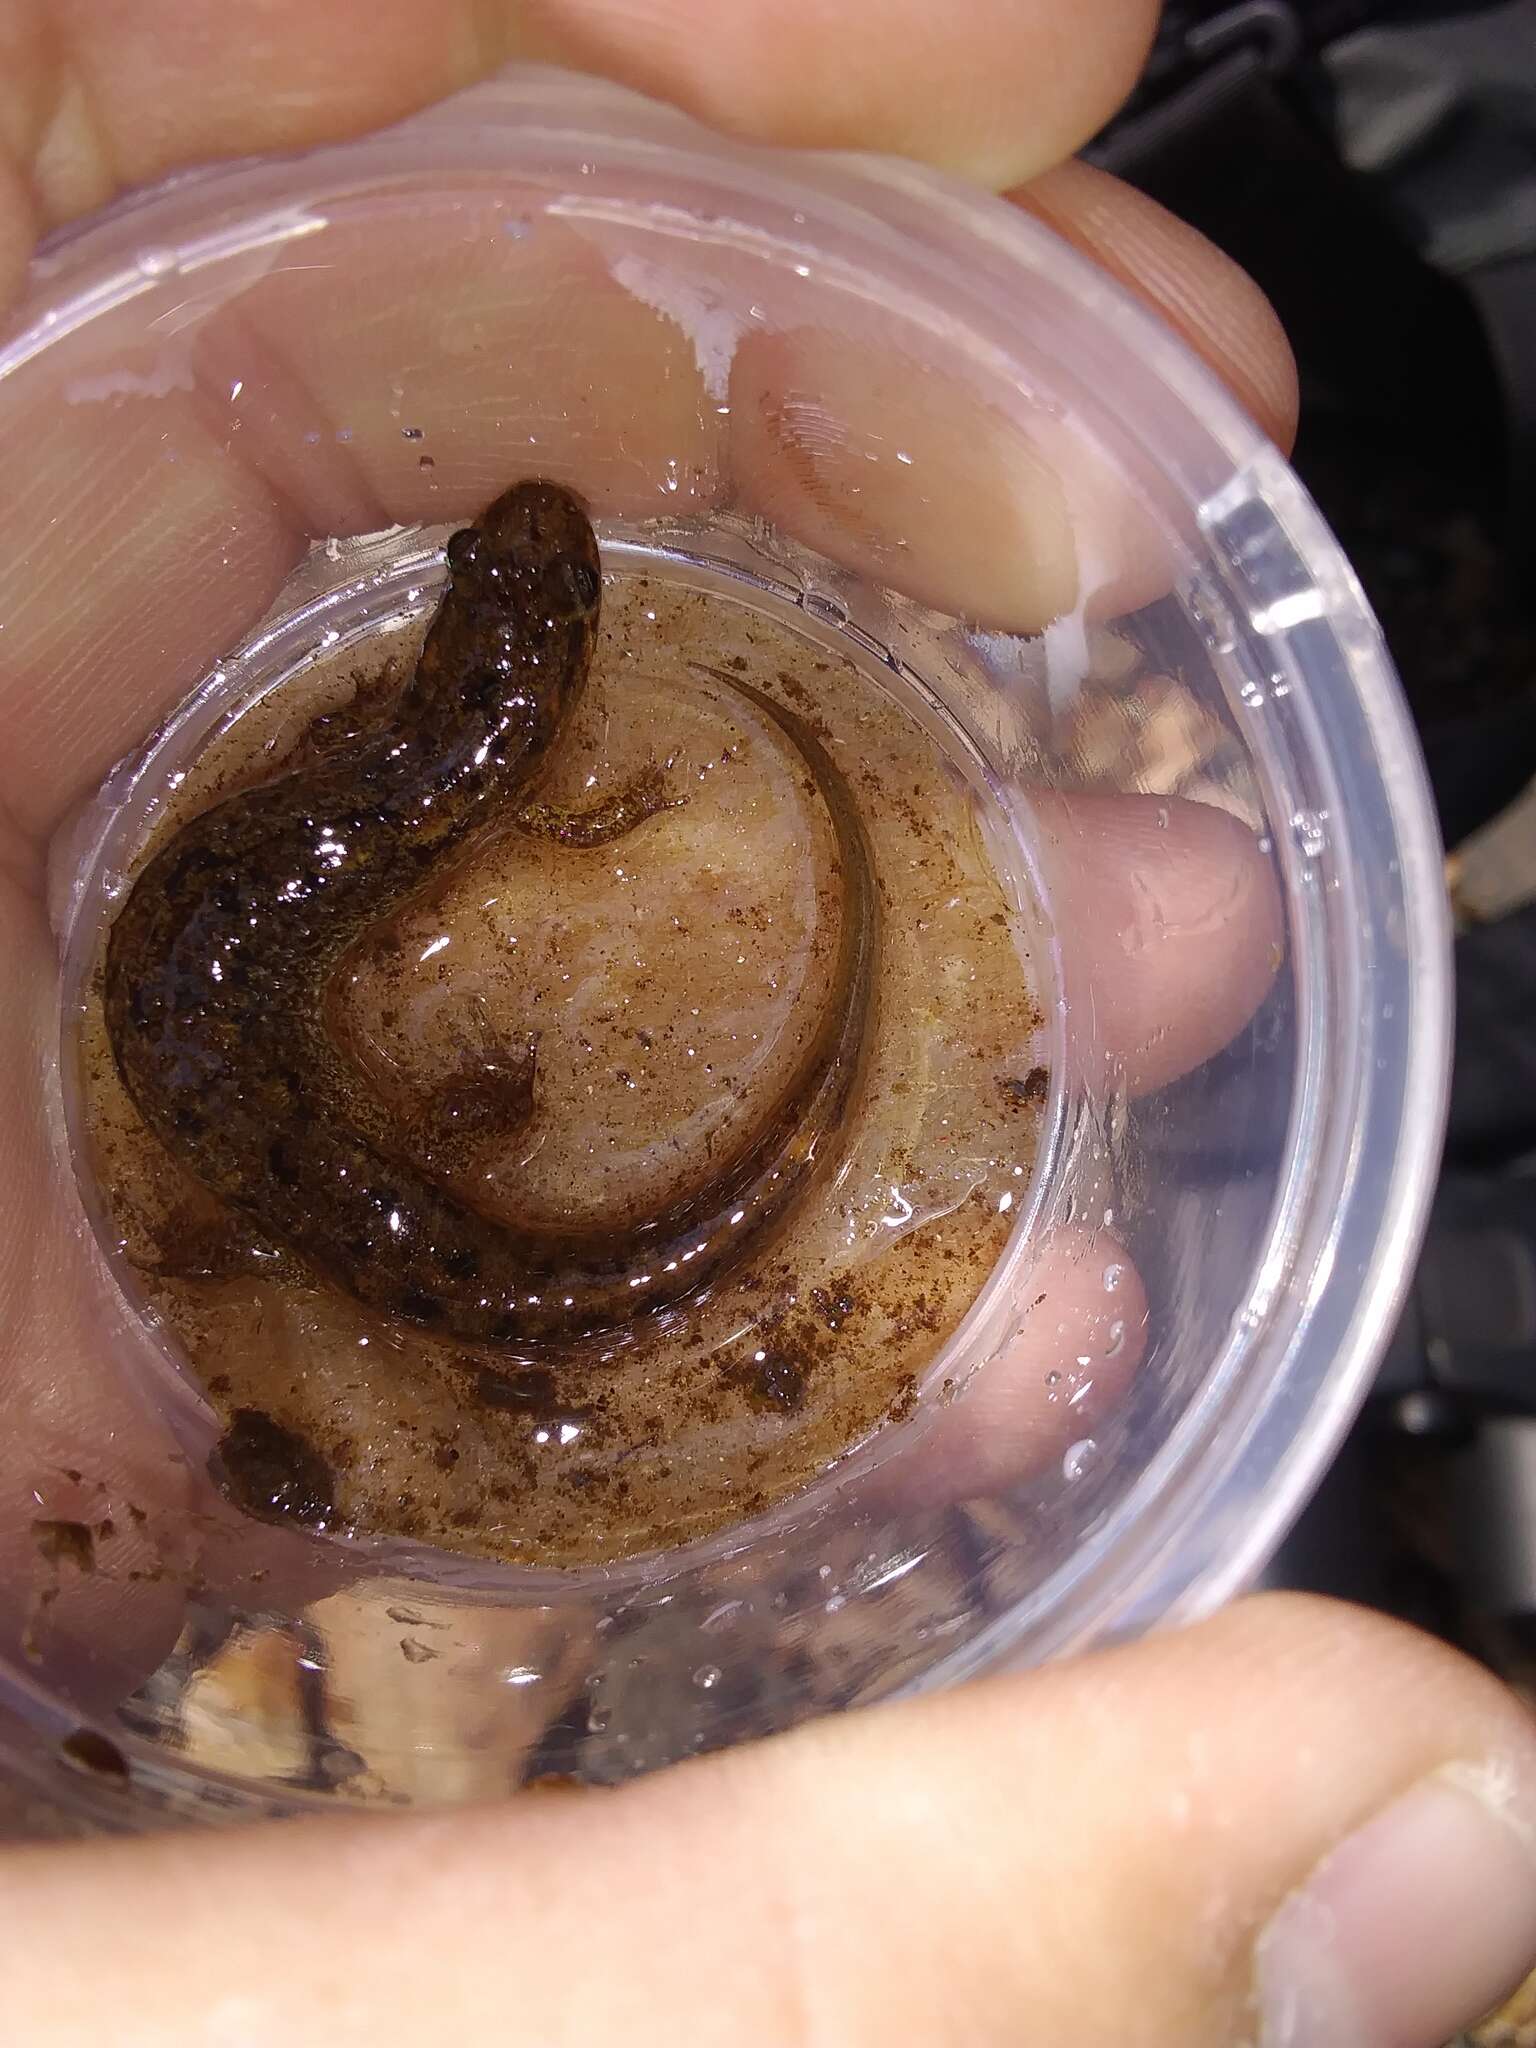 Image of Flat-headed Salamander